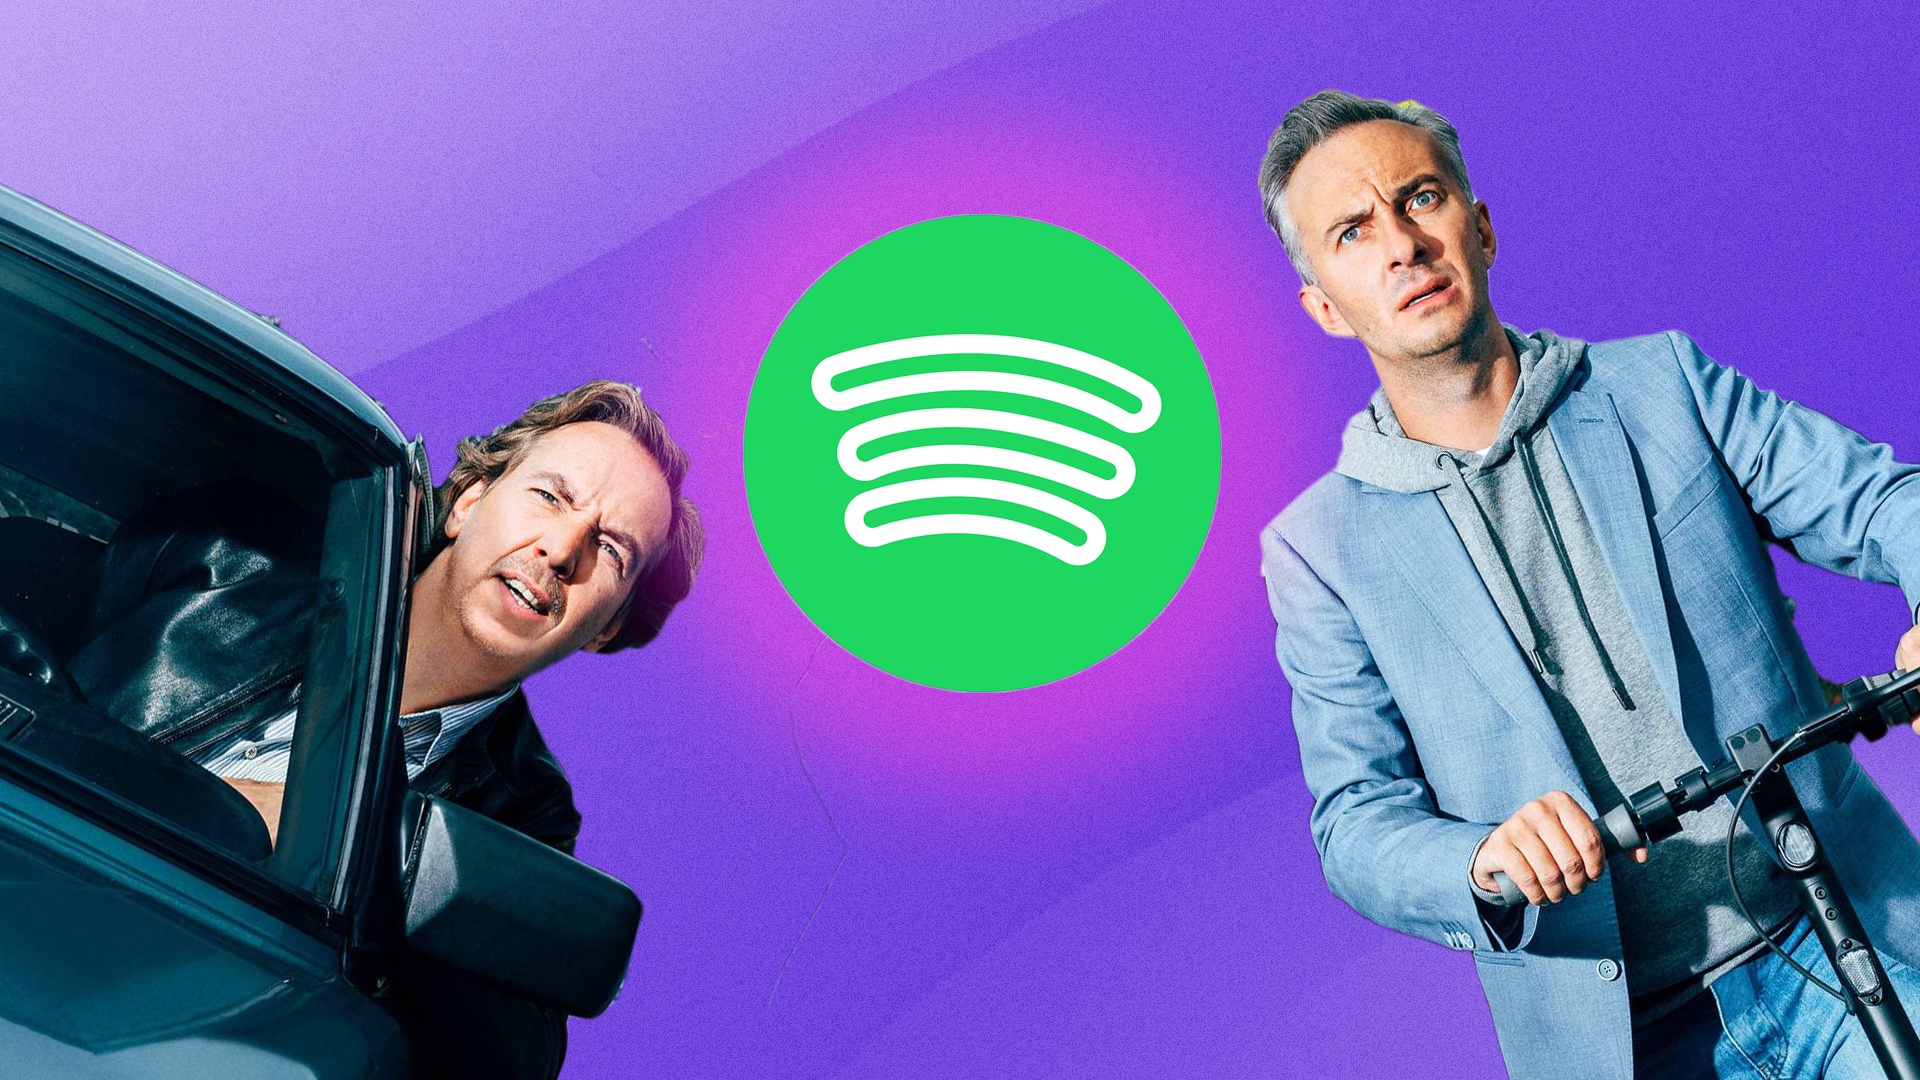 #Spotify bekommt neues Design – und verprellt damit viele Musik-Fans